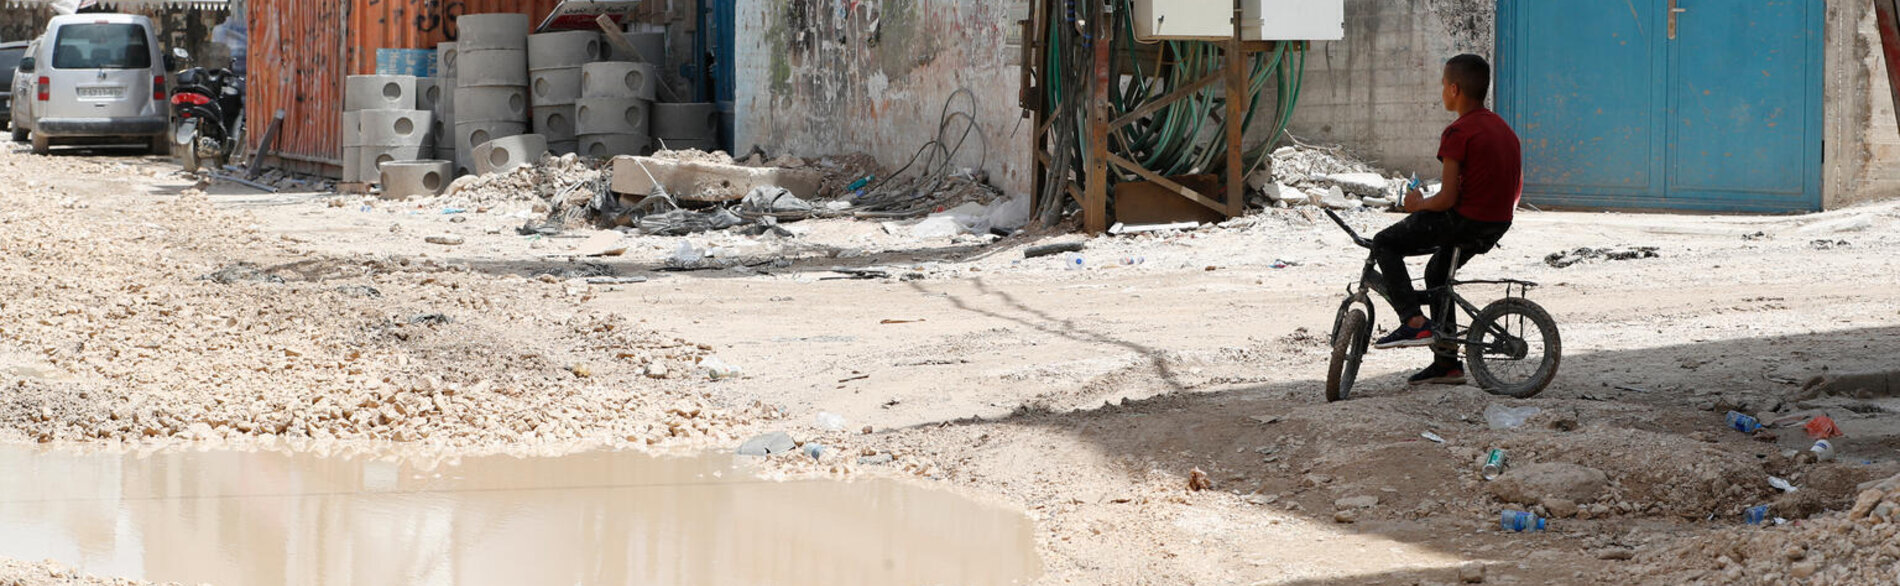 אזור מגורים במחנה הפליטים ג'נין שבו נגרם נזק כבד לתשתית בעקבות מבצע שניהלו כוחות ישראליים. צילום: יוניסף SoP/2024 עלאא בדרנה, 25 במאי 2024